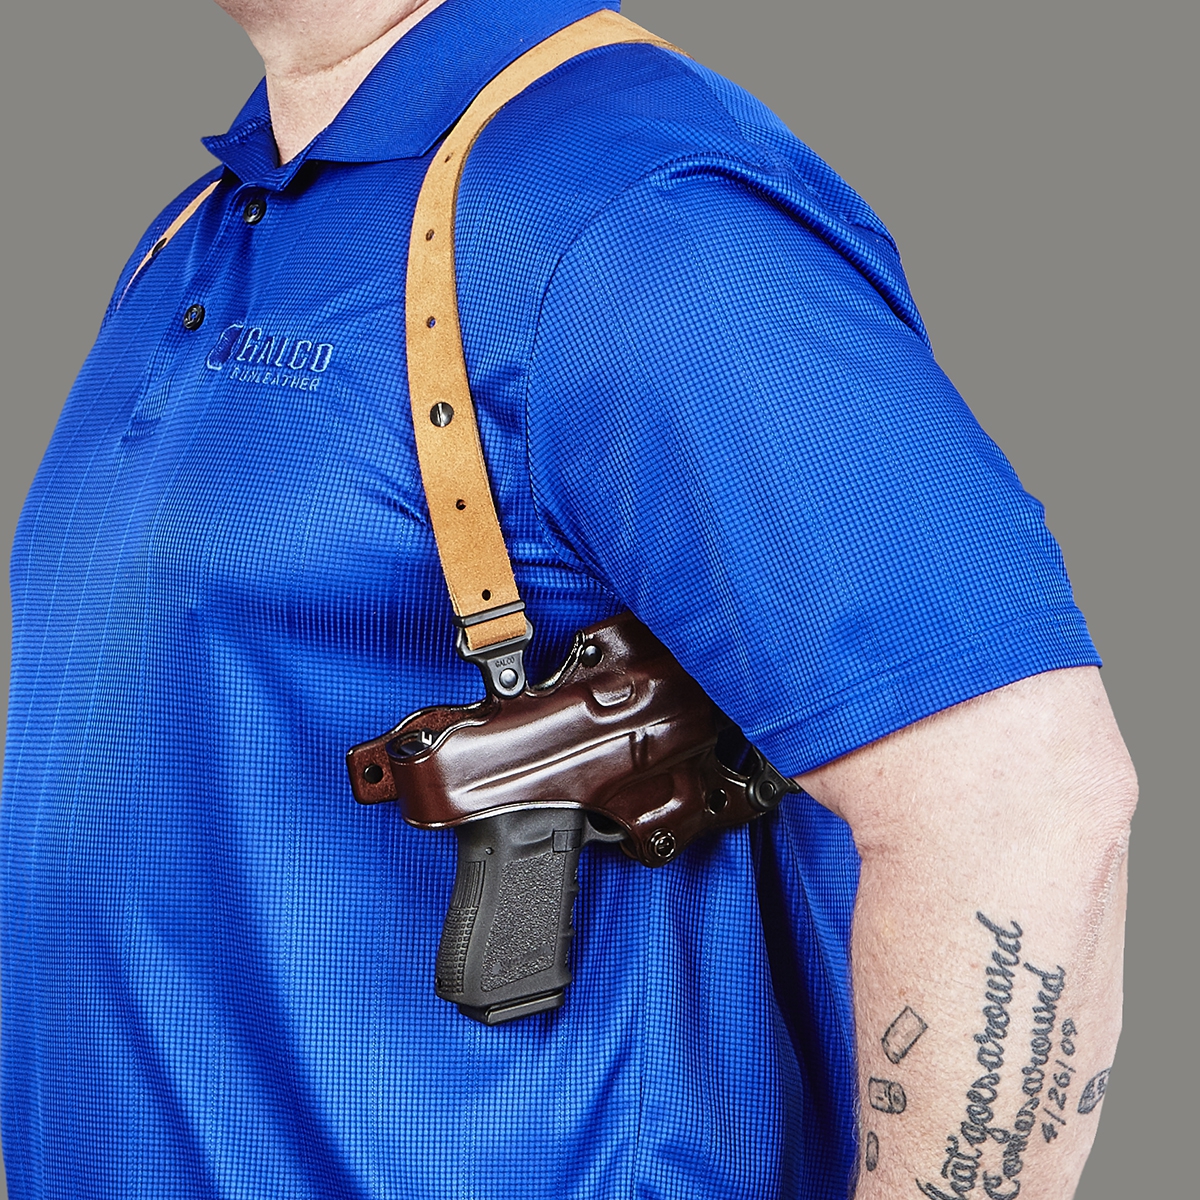 Jackass shoulder holster — pic 2